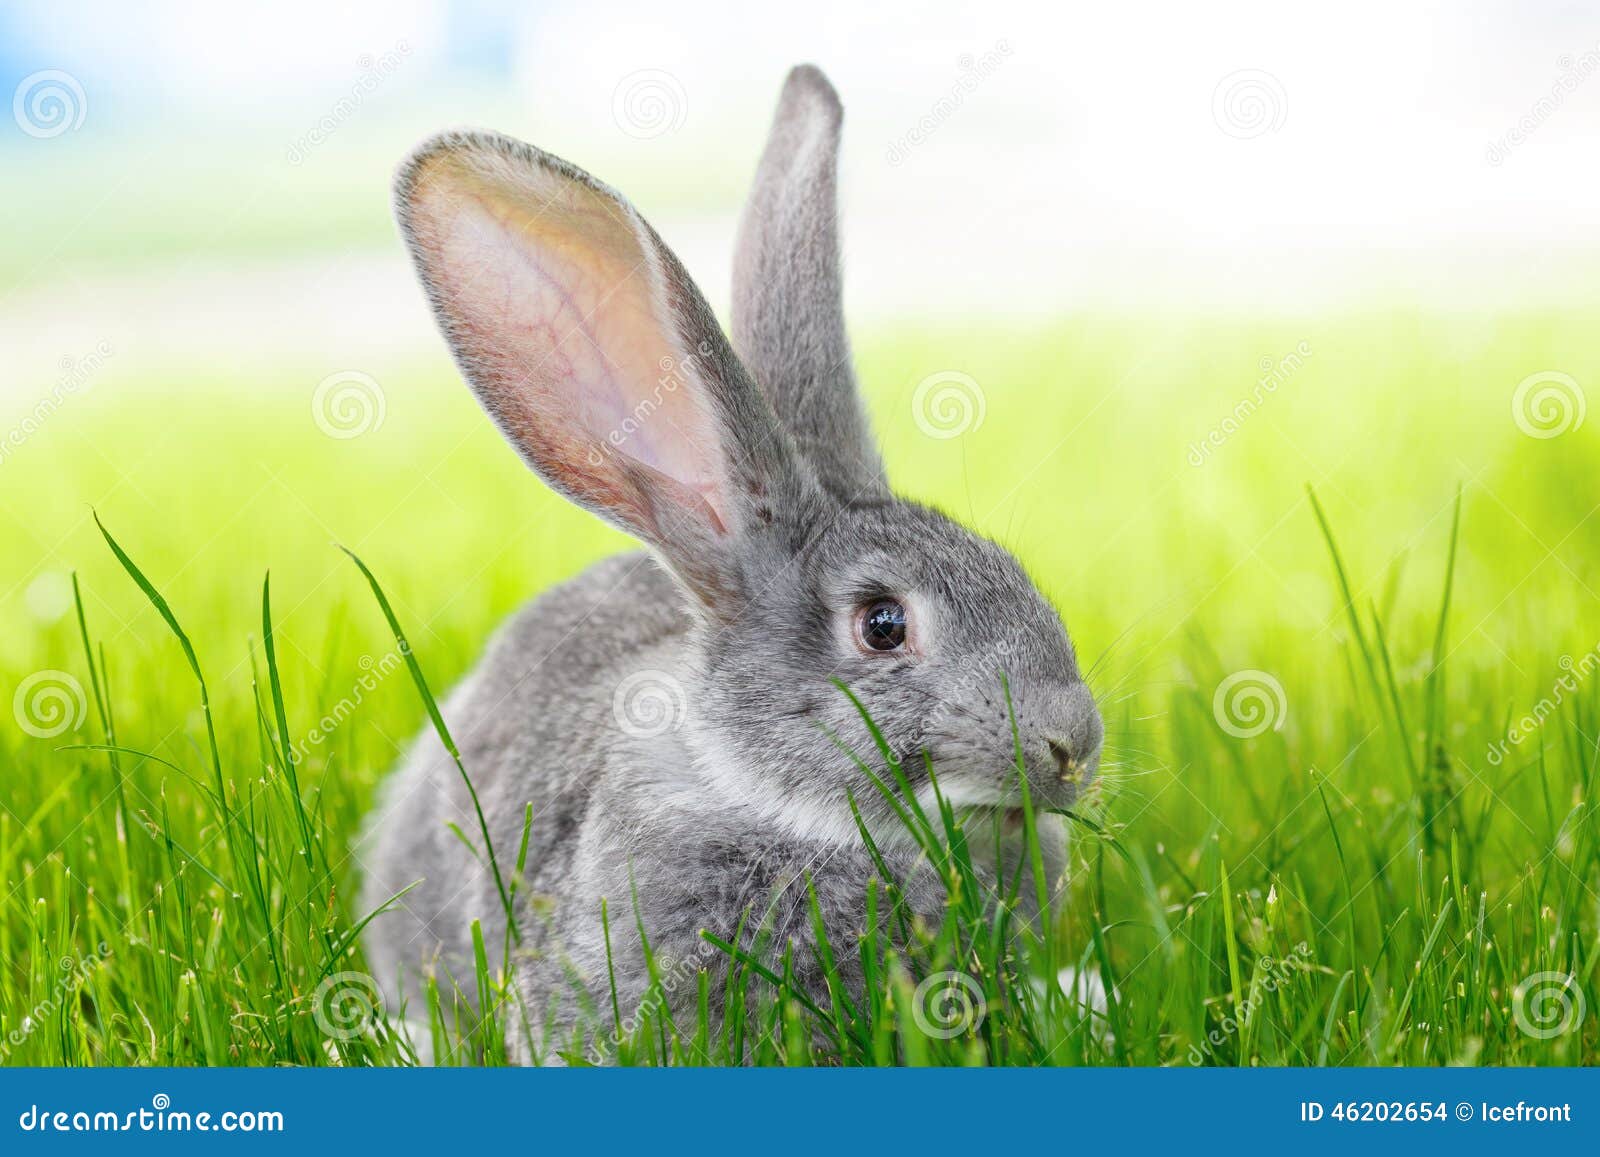 草丛中的兔子桌面壁纸-壁纸图片大全